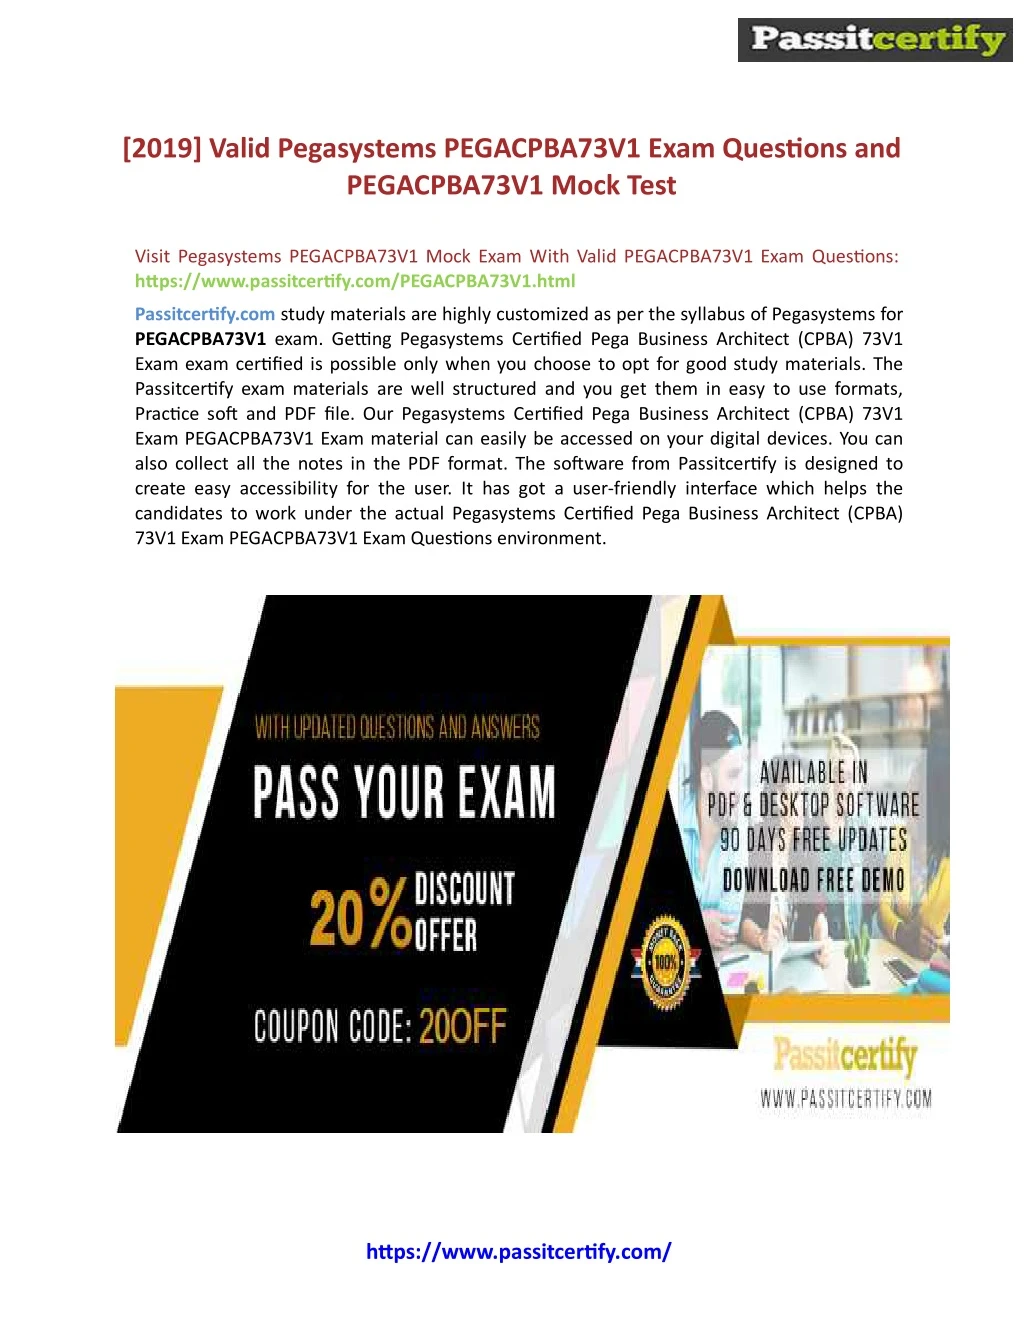 2019 valid pegasystems pegacpba73v1 exam